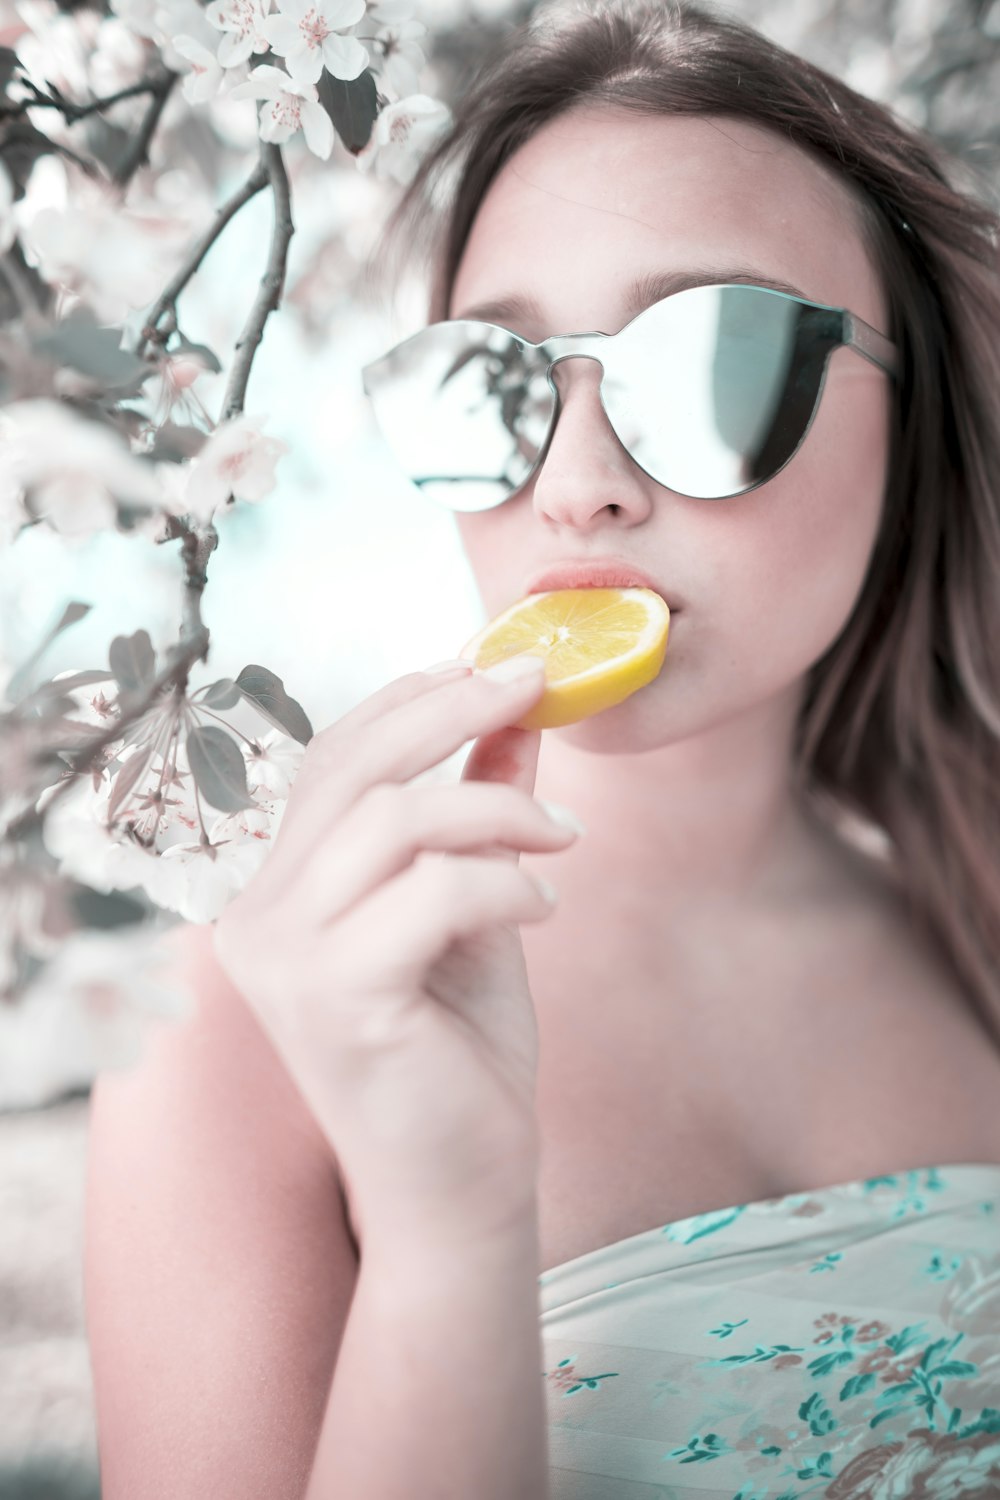 Frau isst in Scheiben geschnittene Orangenfrüchte